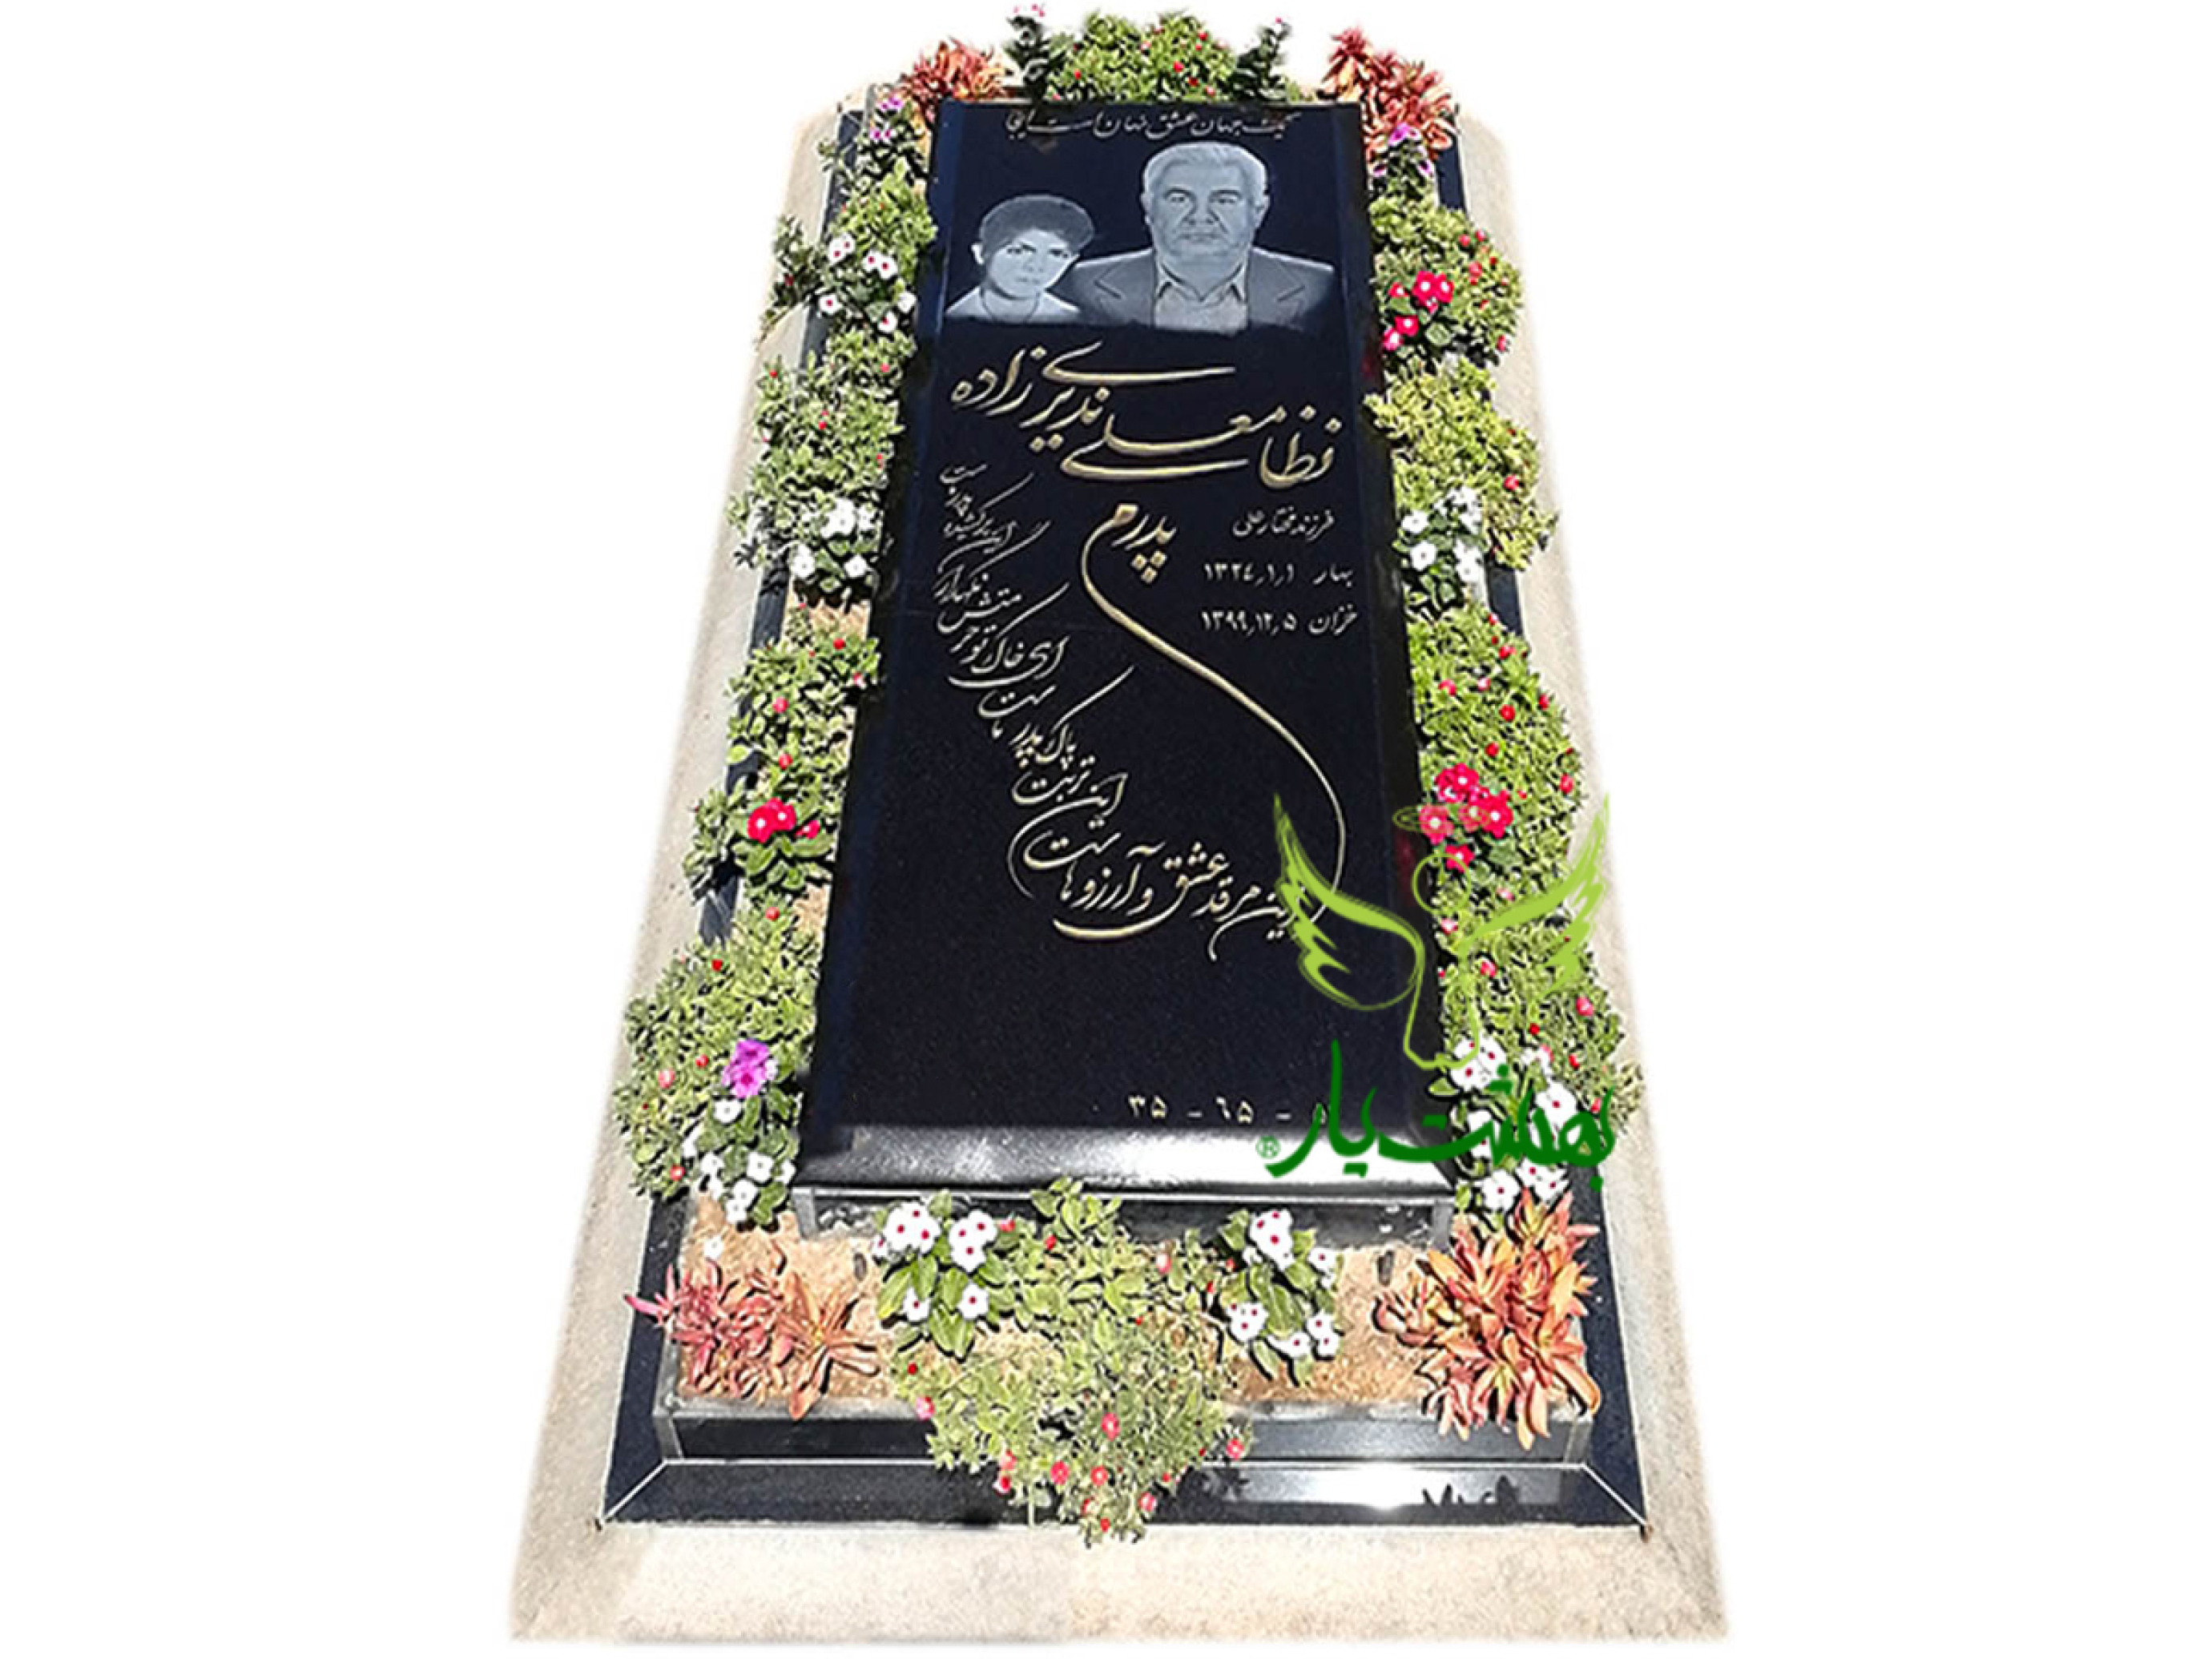  خرید آنلاین سنگ قبر گرانیت برزیلی دور باغچه کیفیا عالی در بهشت یار 